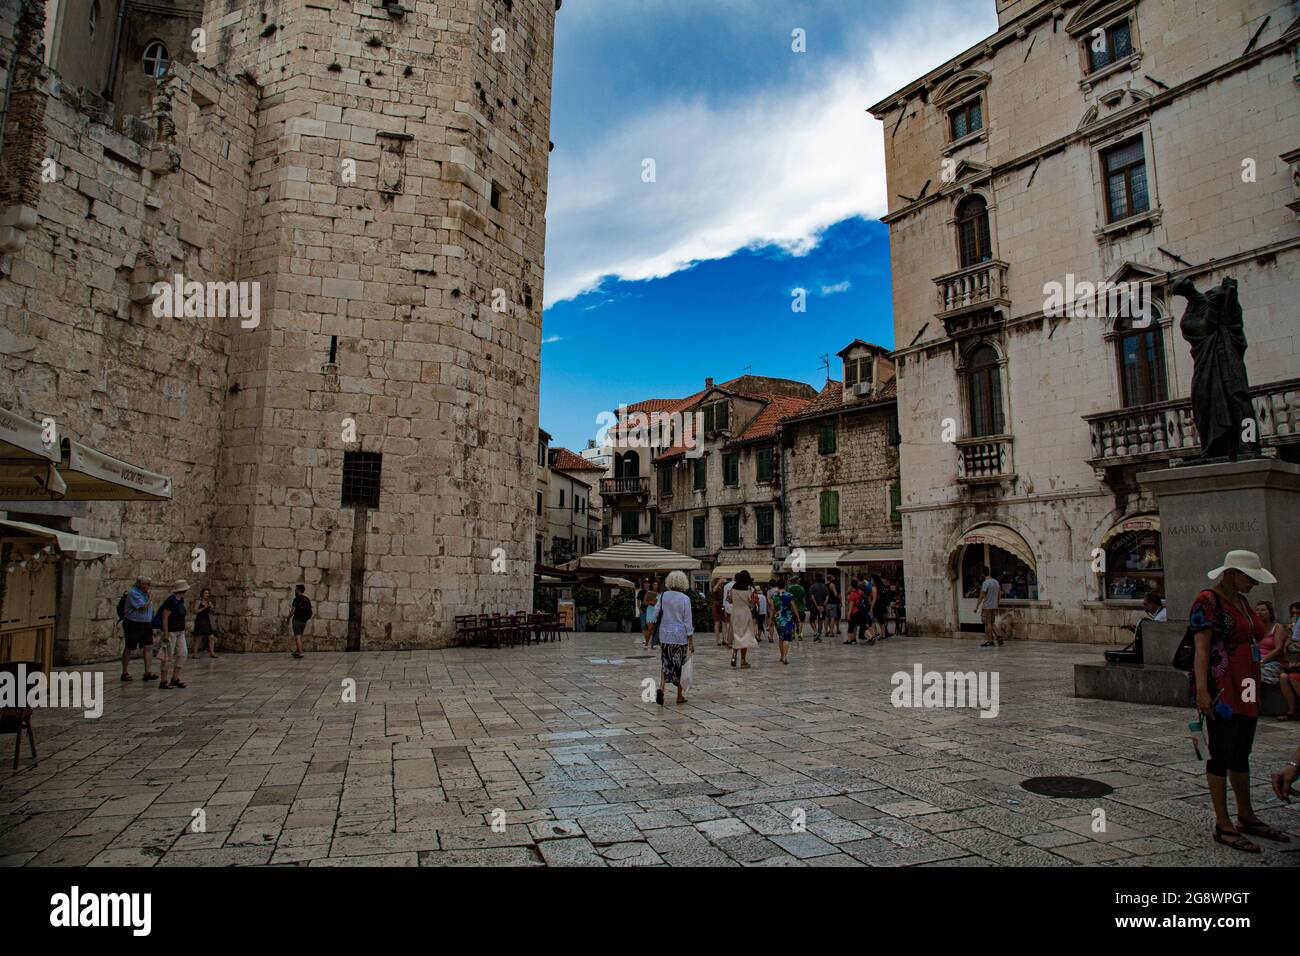 Ciudad fundada por Diocleciano en Croacia a orillas del mar adriatico, con casco antiguo de calles estrechas con arquitectura muy característica Stock Photo